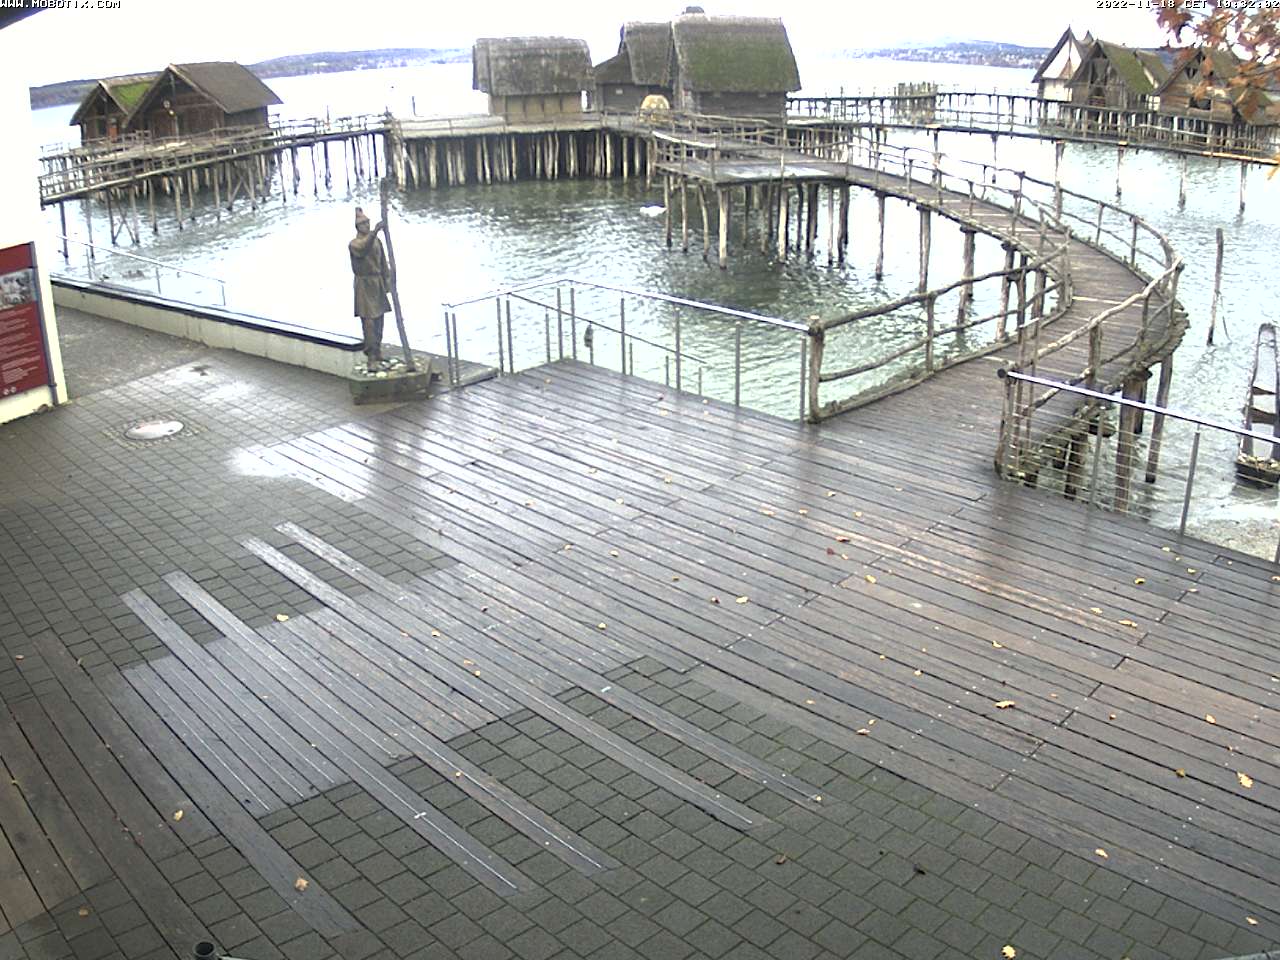 Webcam am Ausgang vom ARCHAEORAMA dem Beginn des Museums. Dieses zeigt in ca. 12 Minuten, wie es auf dem Grund des Bodensees aussieht und wie Taucher dort in den originalen Pfahlbauten arbeiten.